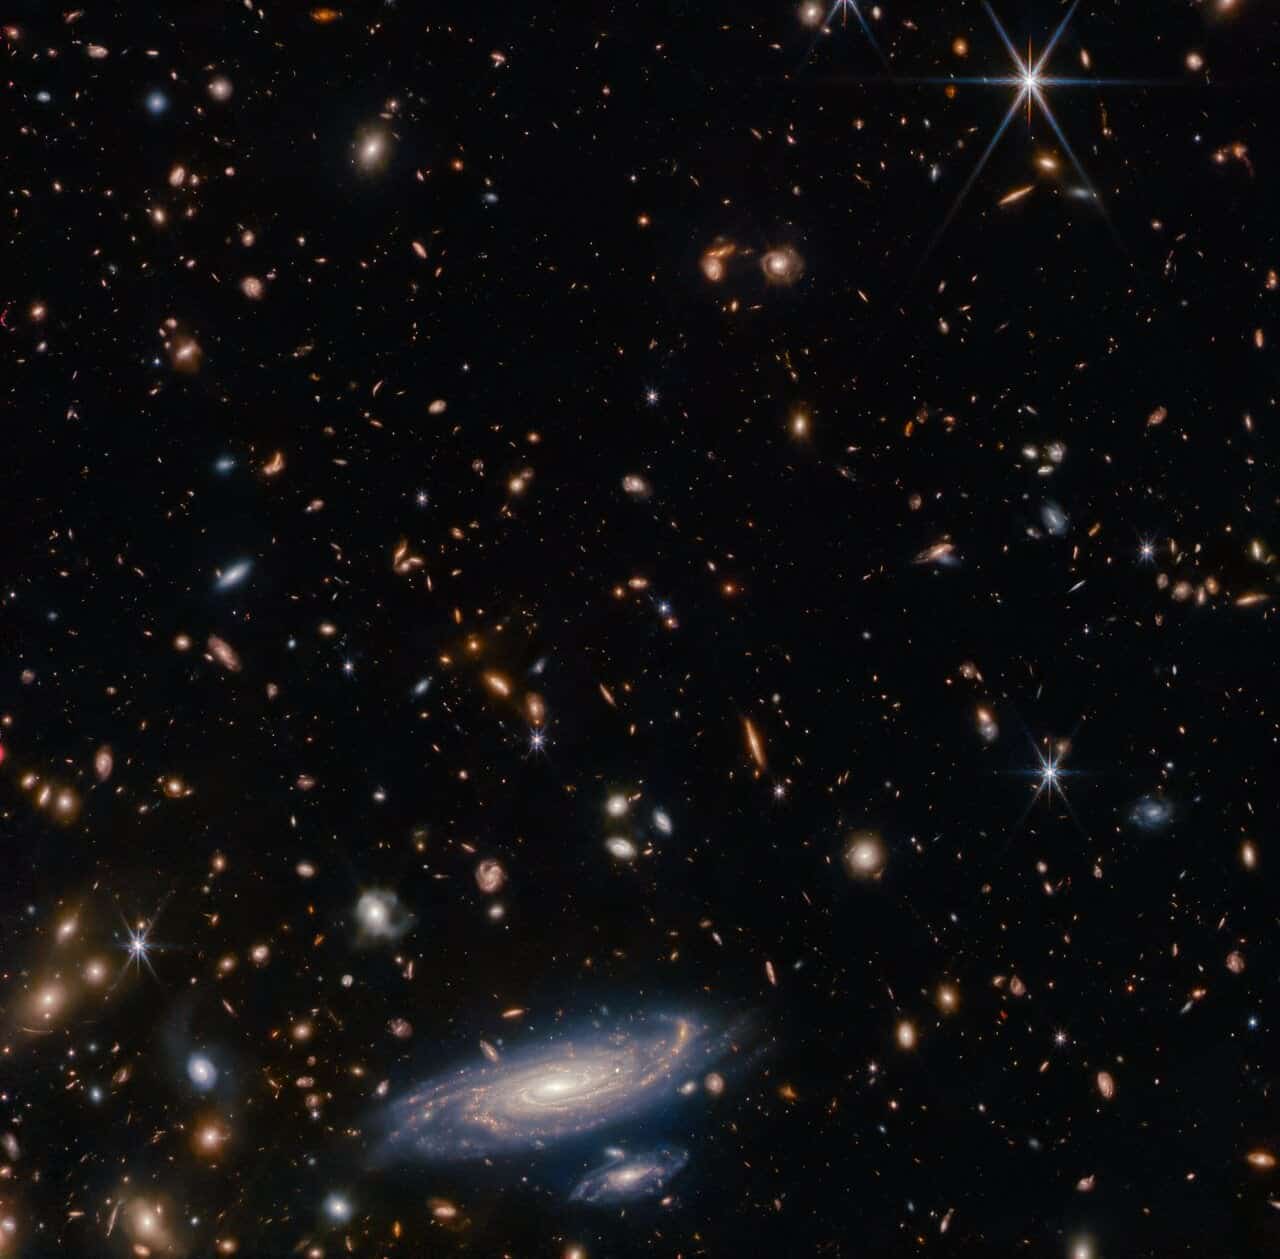 تلسكوب جيمس ويب الفضائي يكتشف مجرة تشبه مجرة درب التبانة